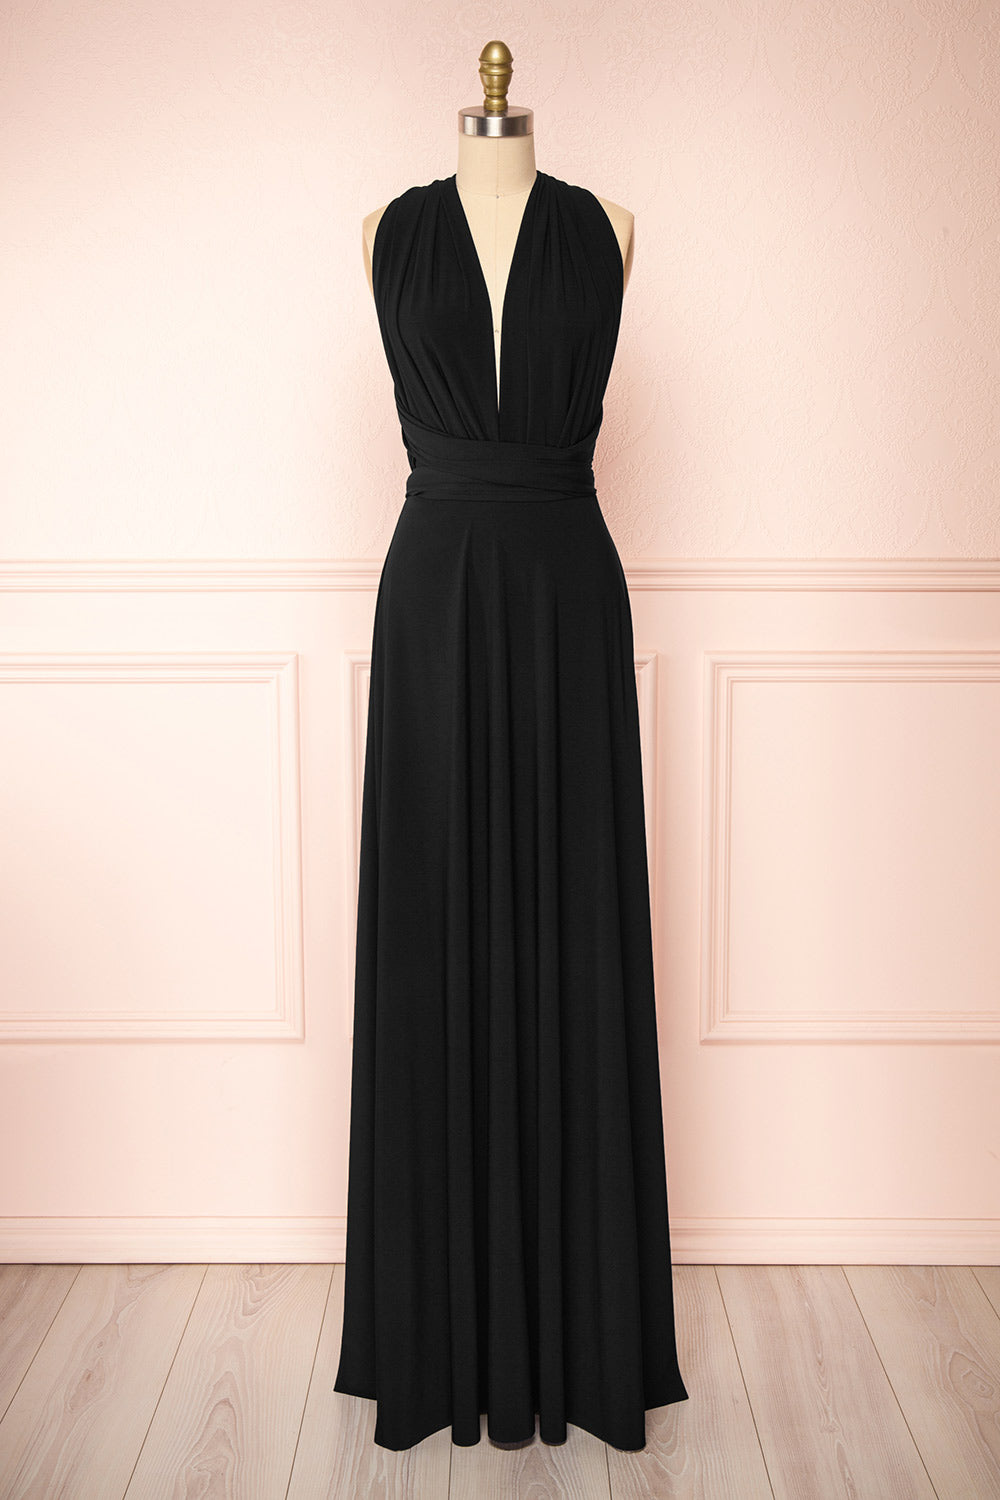 Violaine Black Convertible Maxi Dress | Boutique 1861 front view